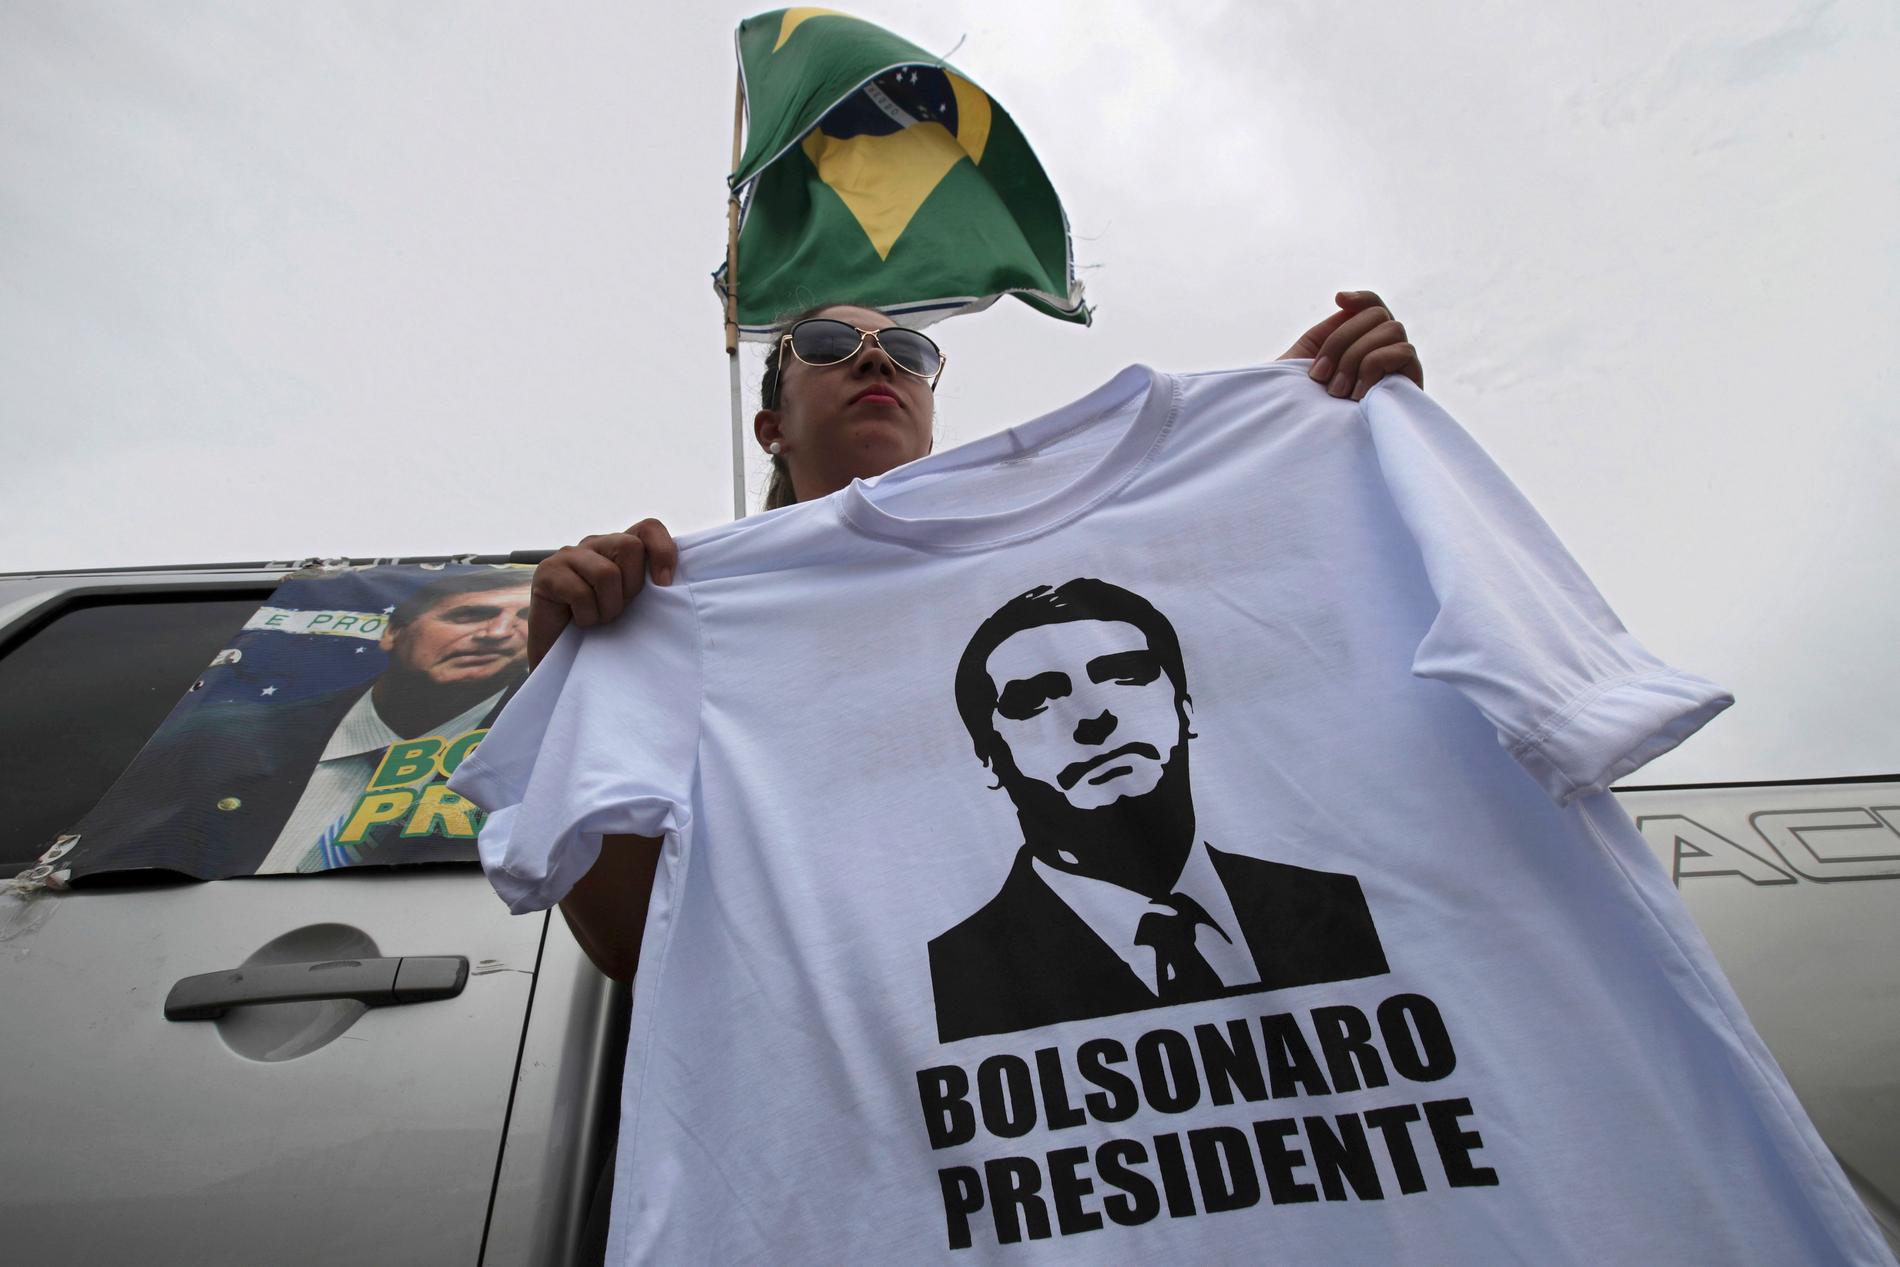 En Bolsonarosupporter säljer tröjor med tryck föreställande sin kandidat vid en busstation i Brasilia, 17 oktober 2018.